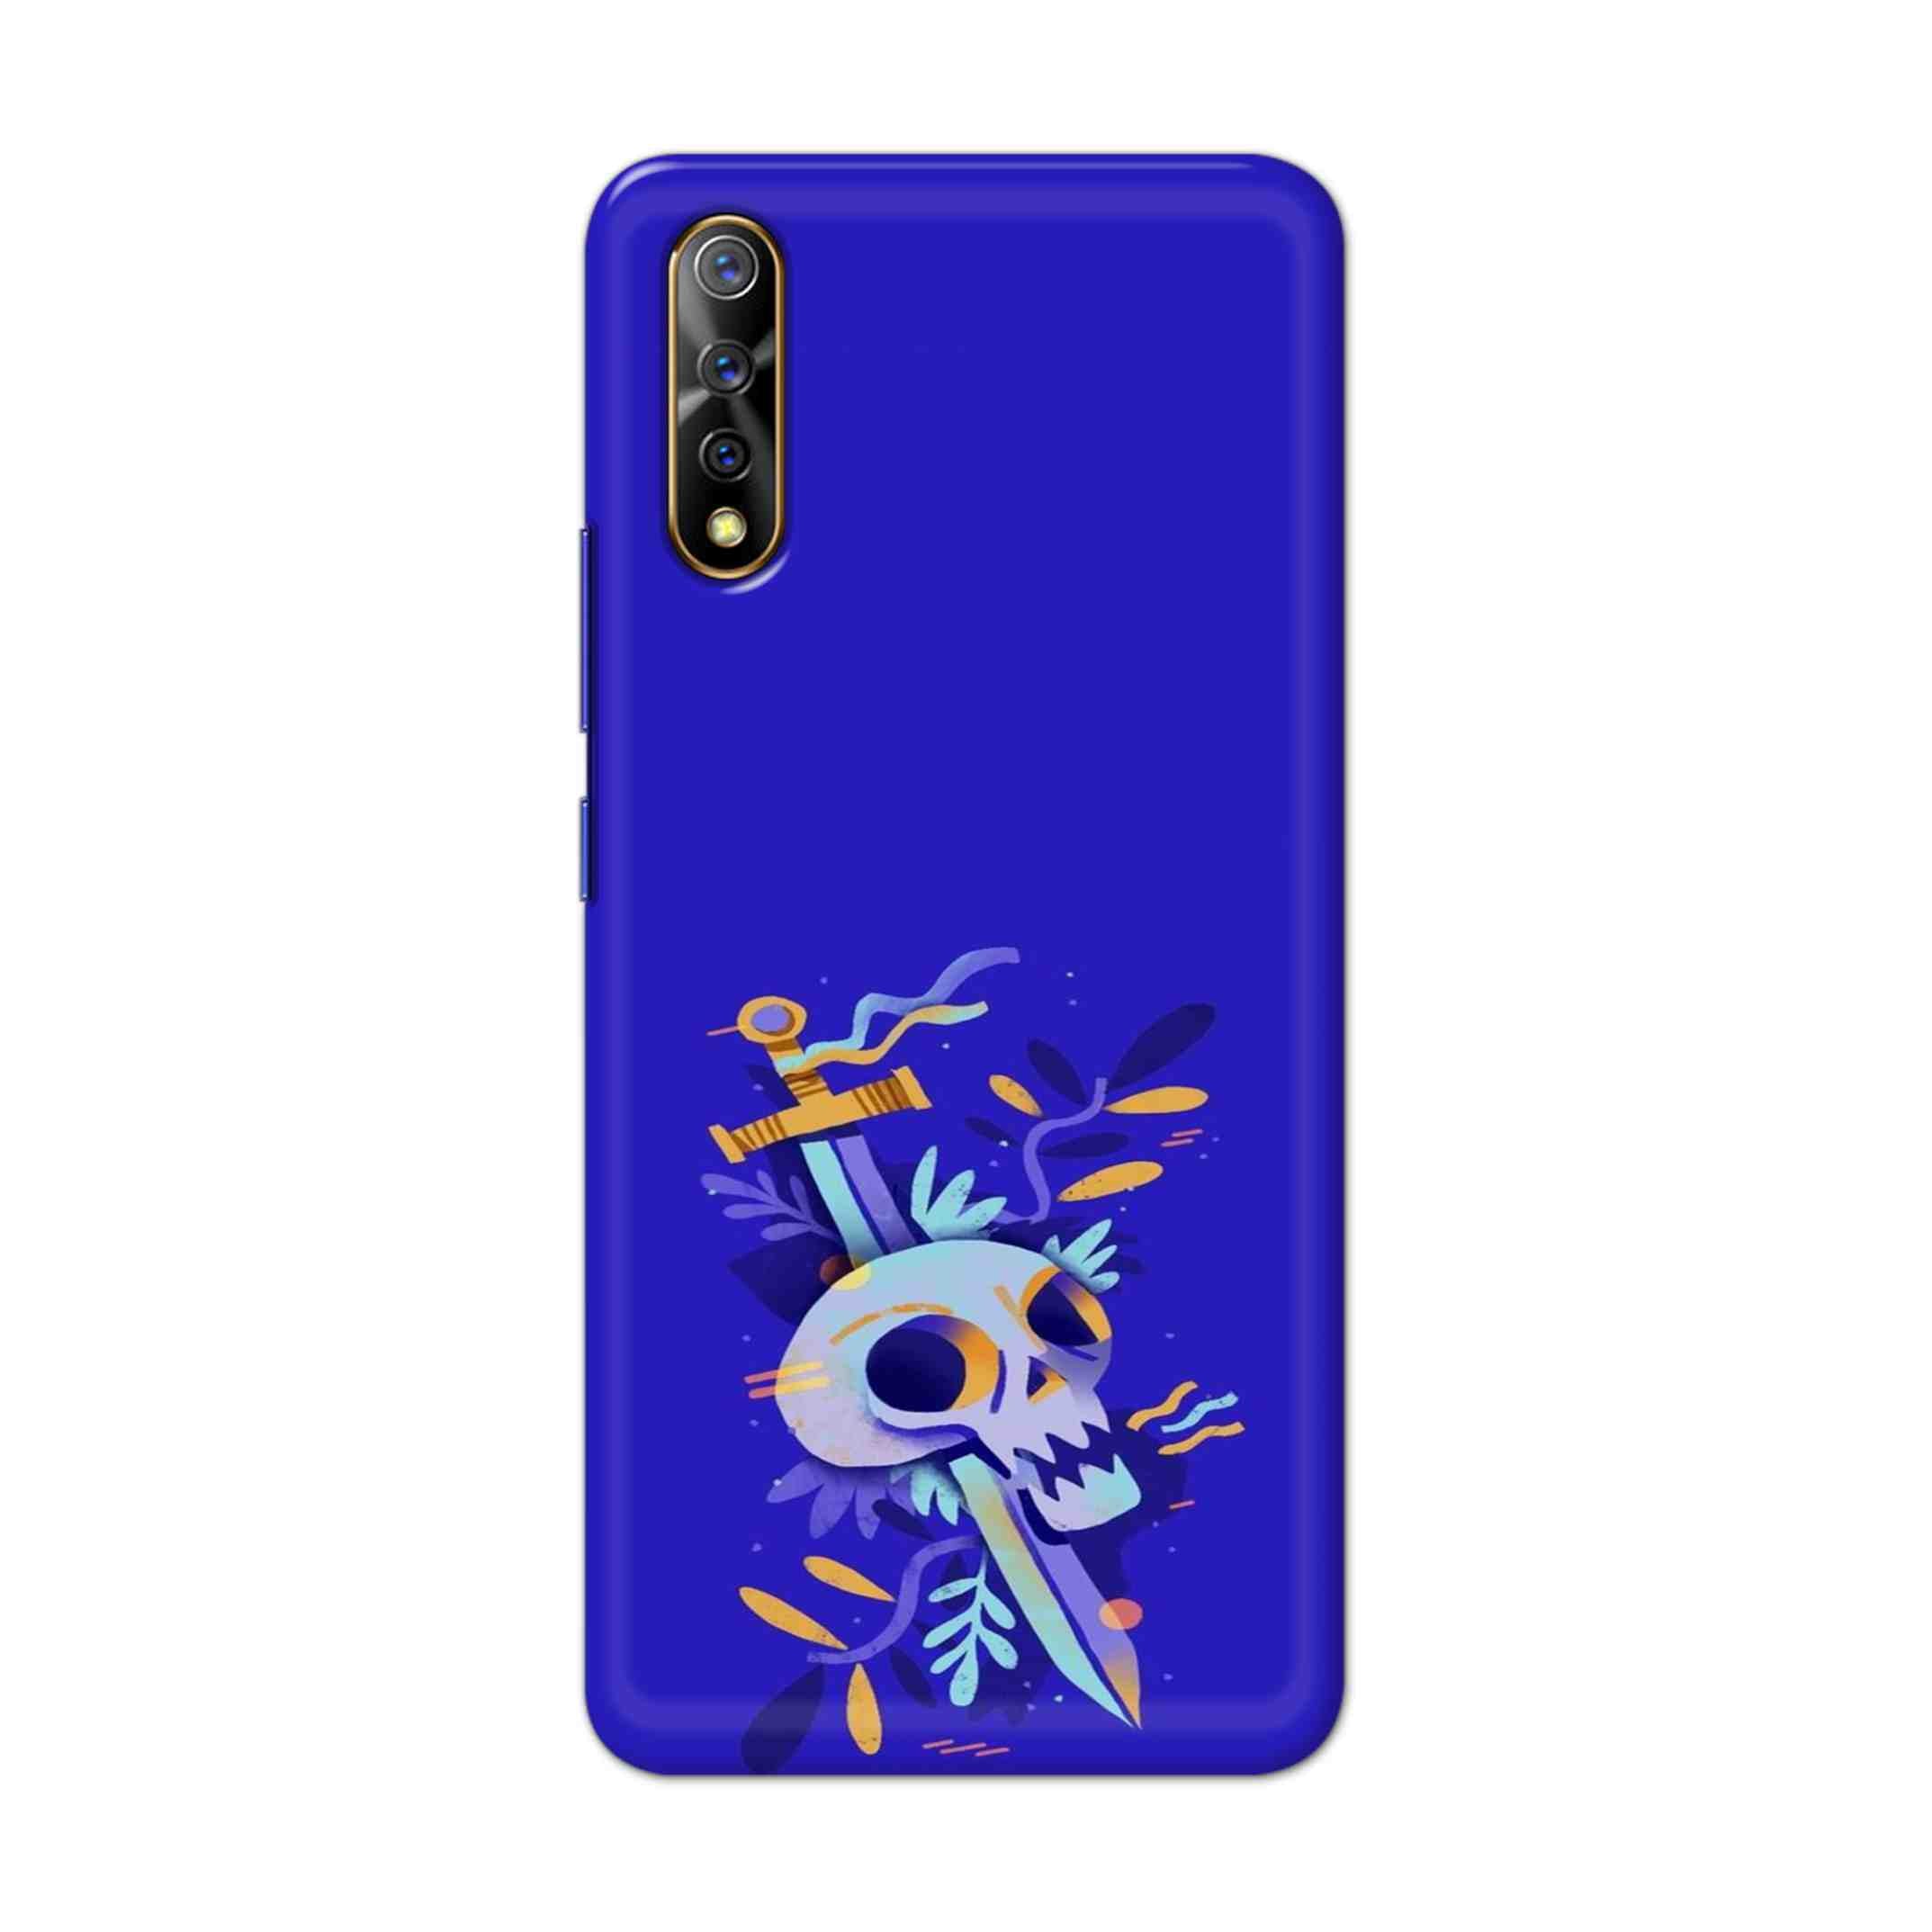 Buy Blue Skull Hard Back Mobile Phone Case Cover For Vivo S1 / Z1x Online